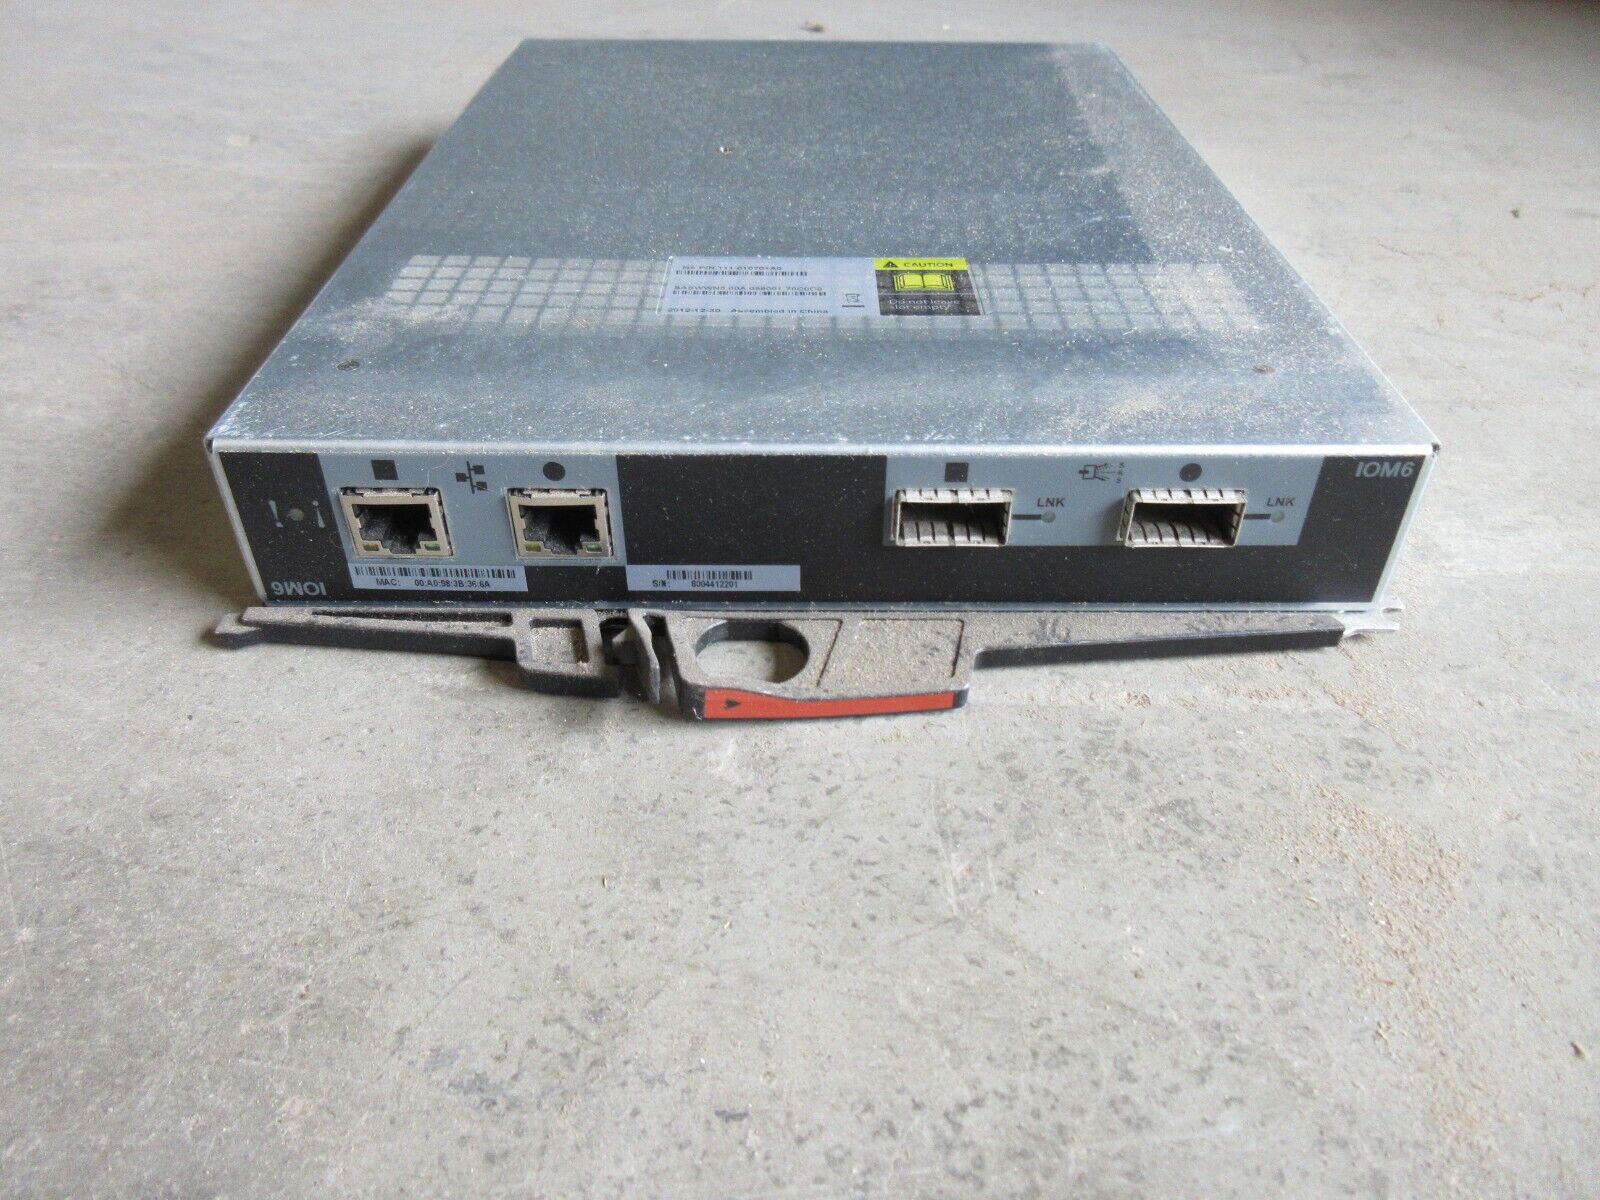 NetApp IOM6 6Gb/s SAS Storage Controller Module P/N: 111-01070+A0